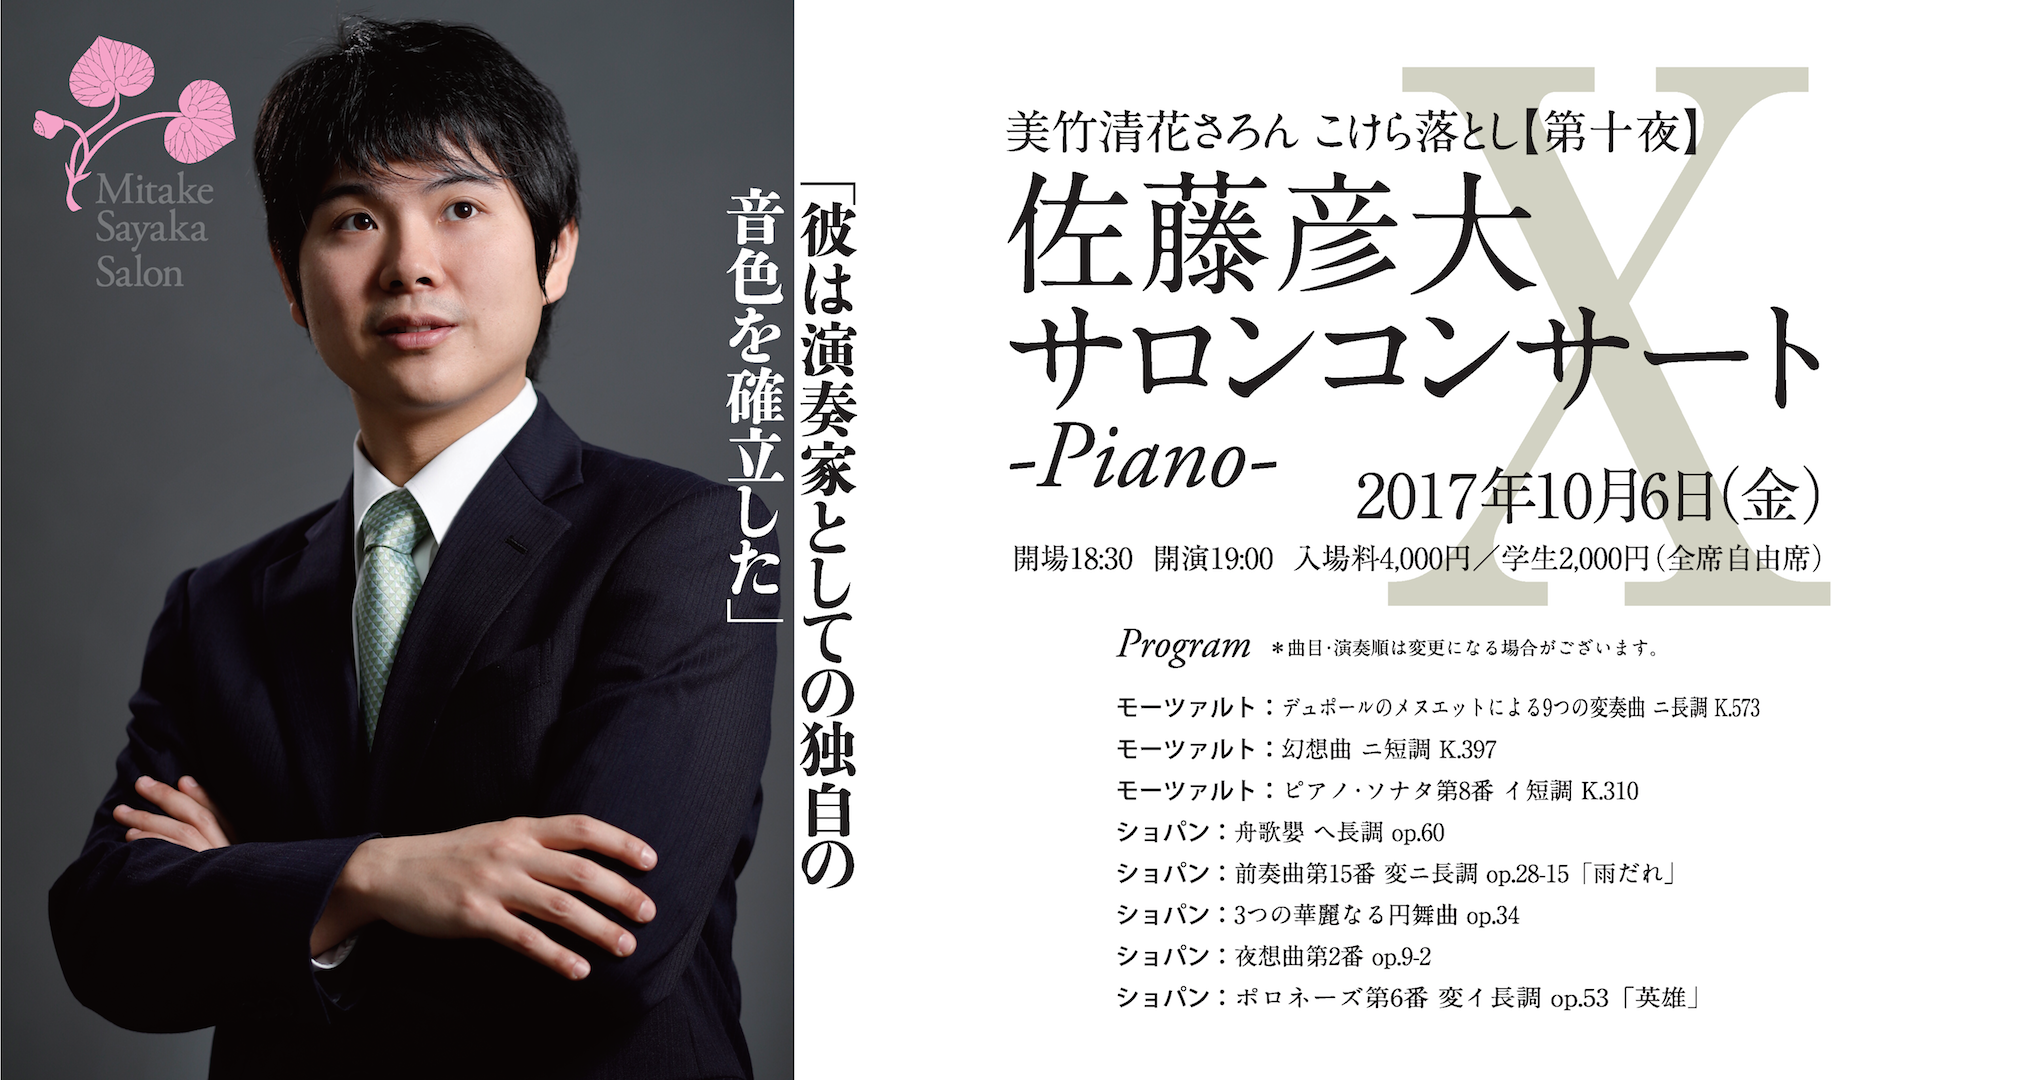 【第十夜】佐藤彦大サロンコンサート-Piano-